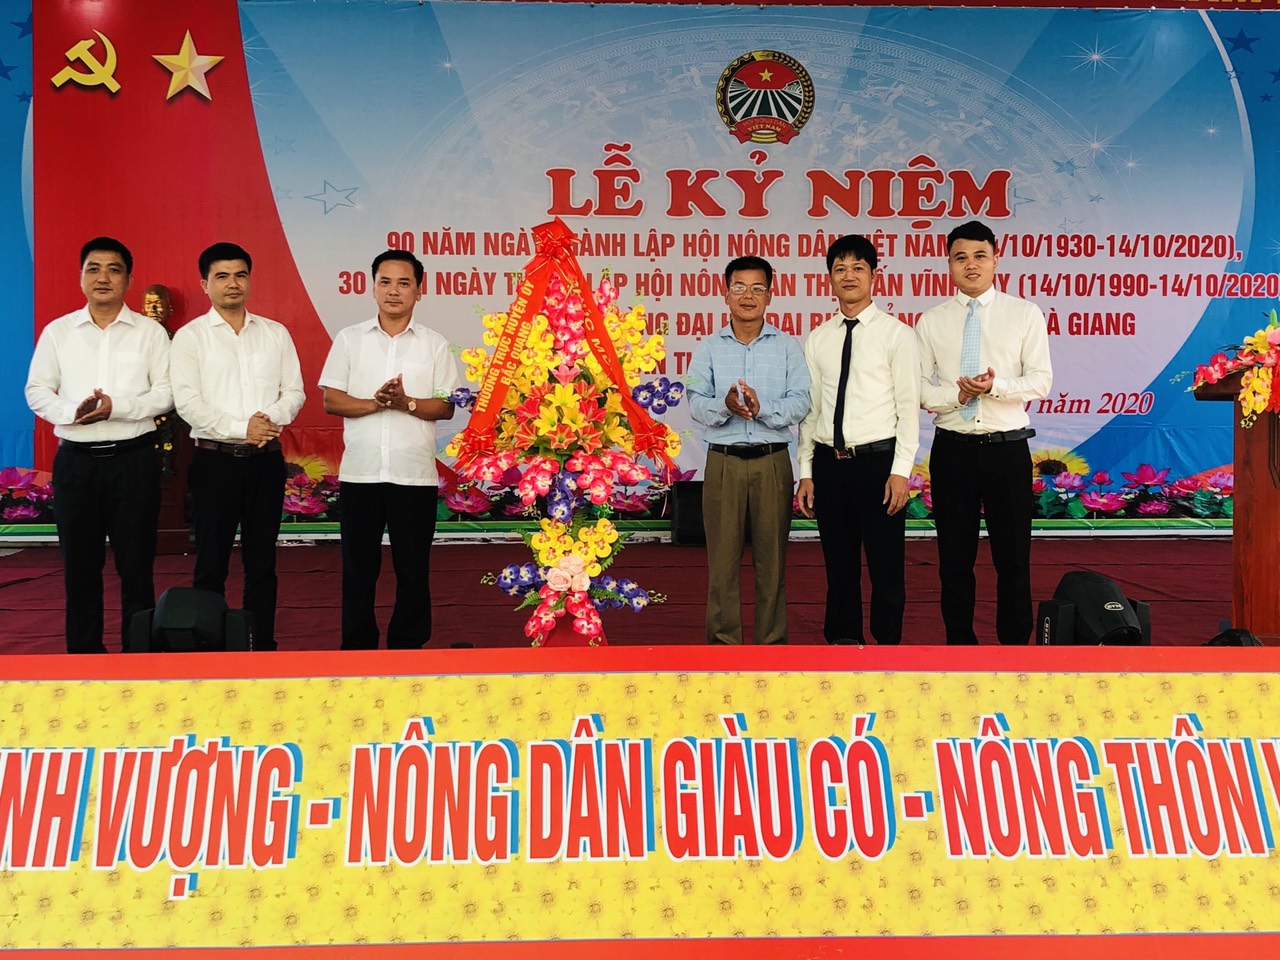 Thị trấn Vĩnh Tuy tổ chức Lễ kỷ niệm 90 năm ngày thành lập Hội Nông dân Việt Nam (14/10/1930-14/10/2020) và tuyên dương các tập thể, cá nhân tiêu biểu xuất sắc